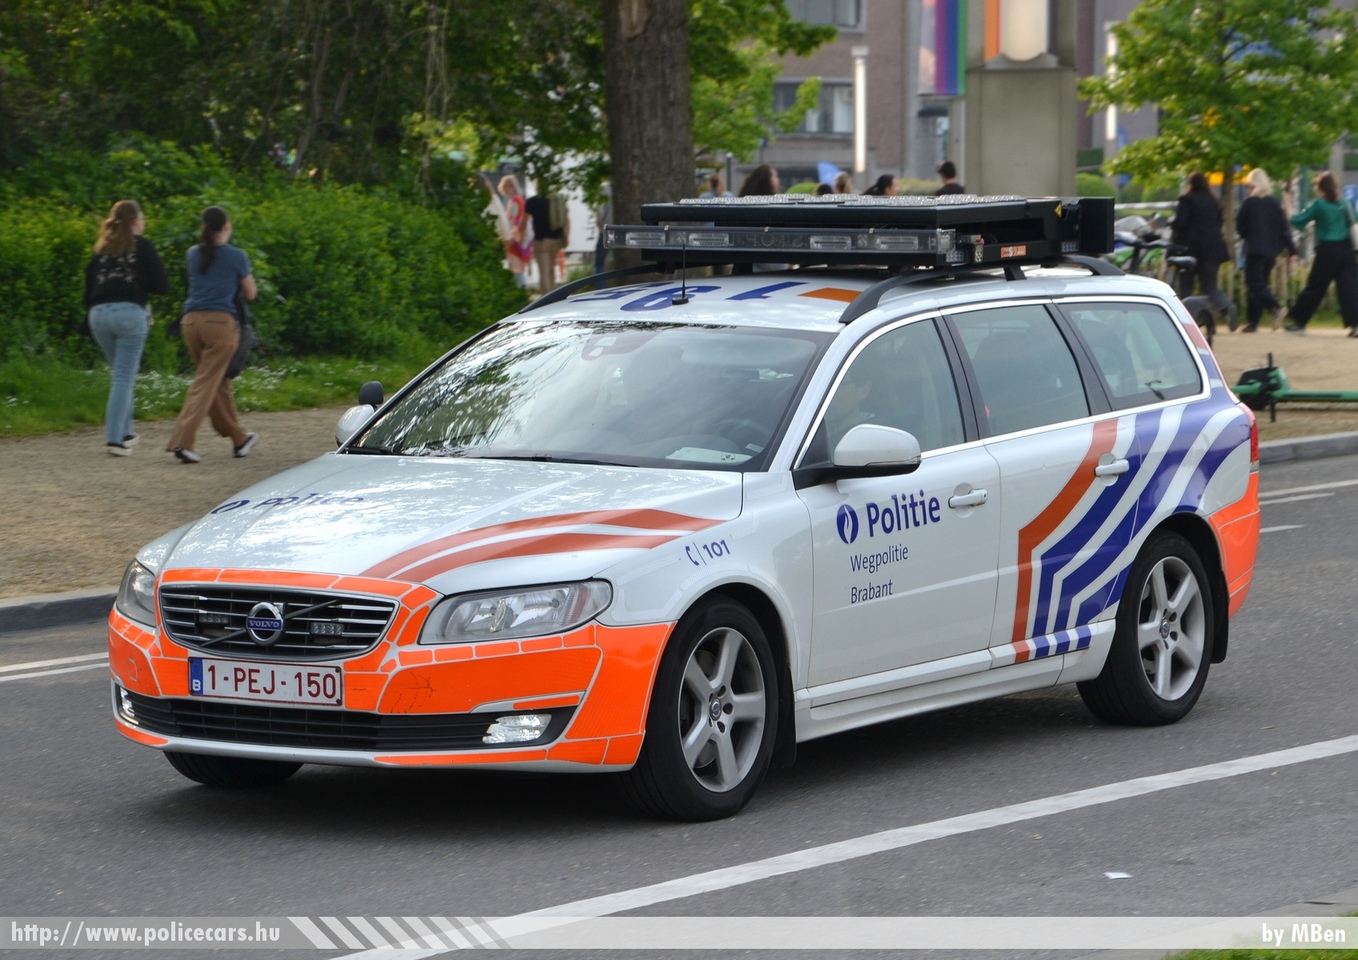 Belgiumban őrizetbe vettek egy férfit zsidó közösségek elleni támadás kitervelésének gyanújával